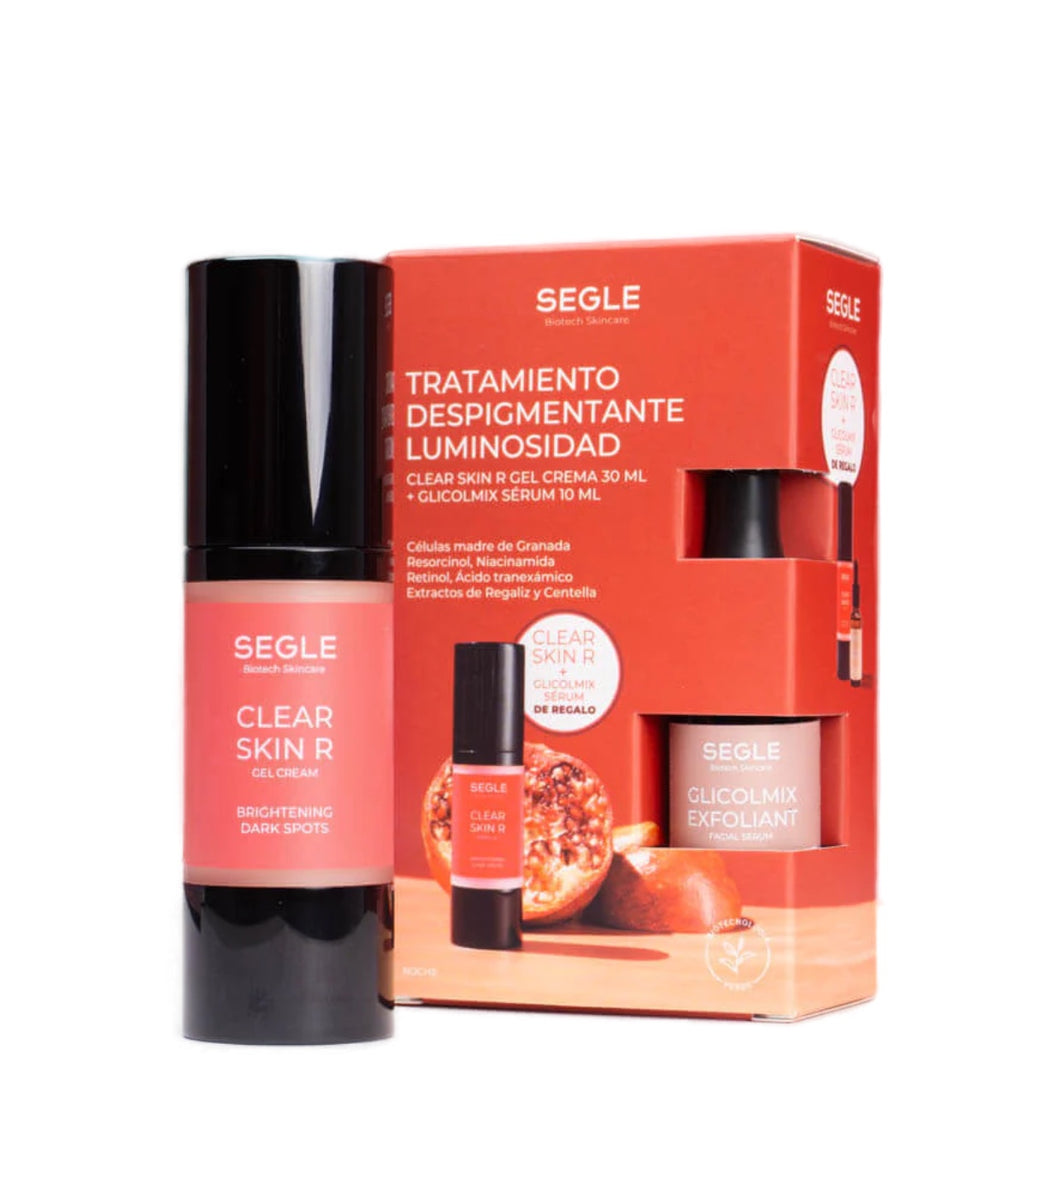 Segle pack despigmentante clear skin R 30 ml + Glicolmix 10 ml